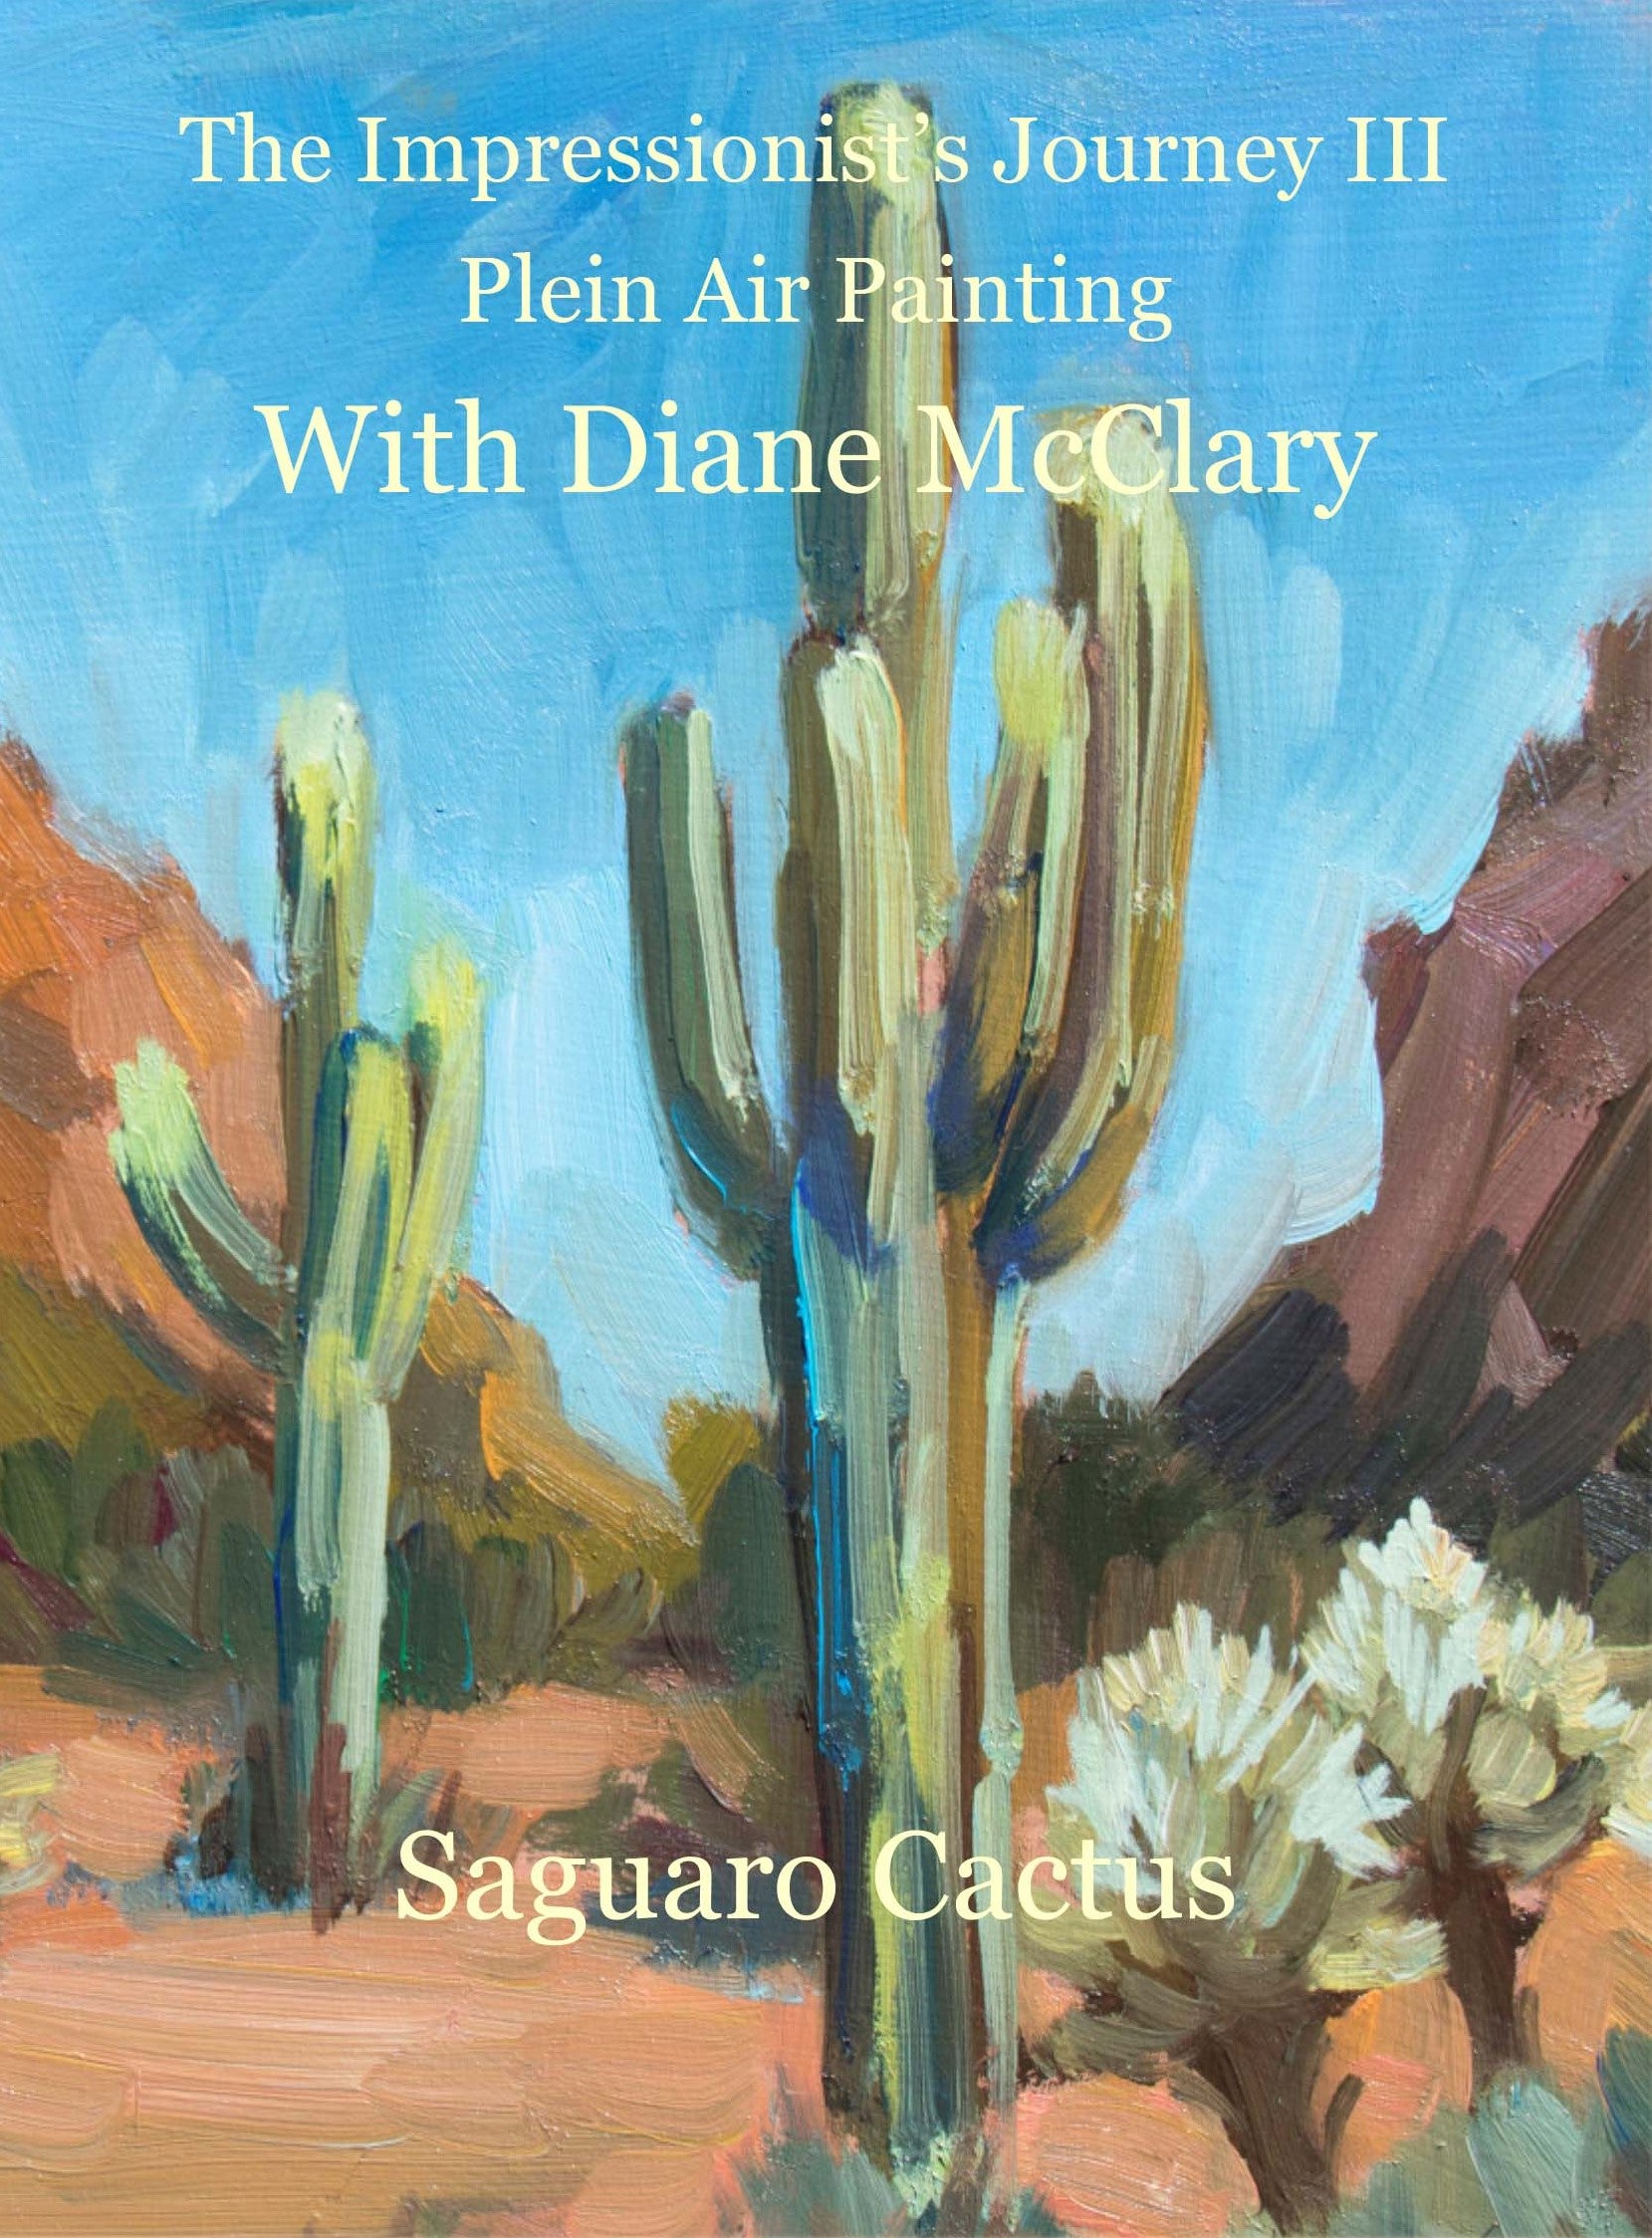 Diane McClary: Saguaro Cactus